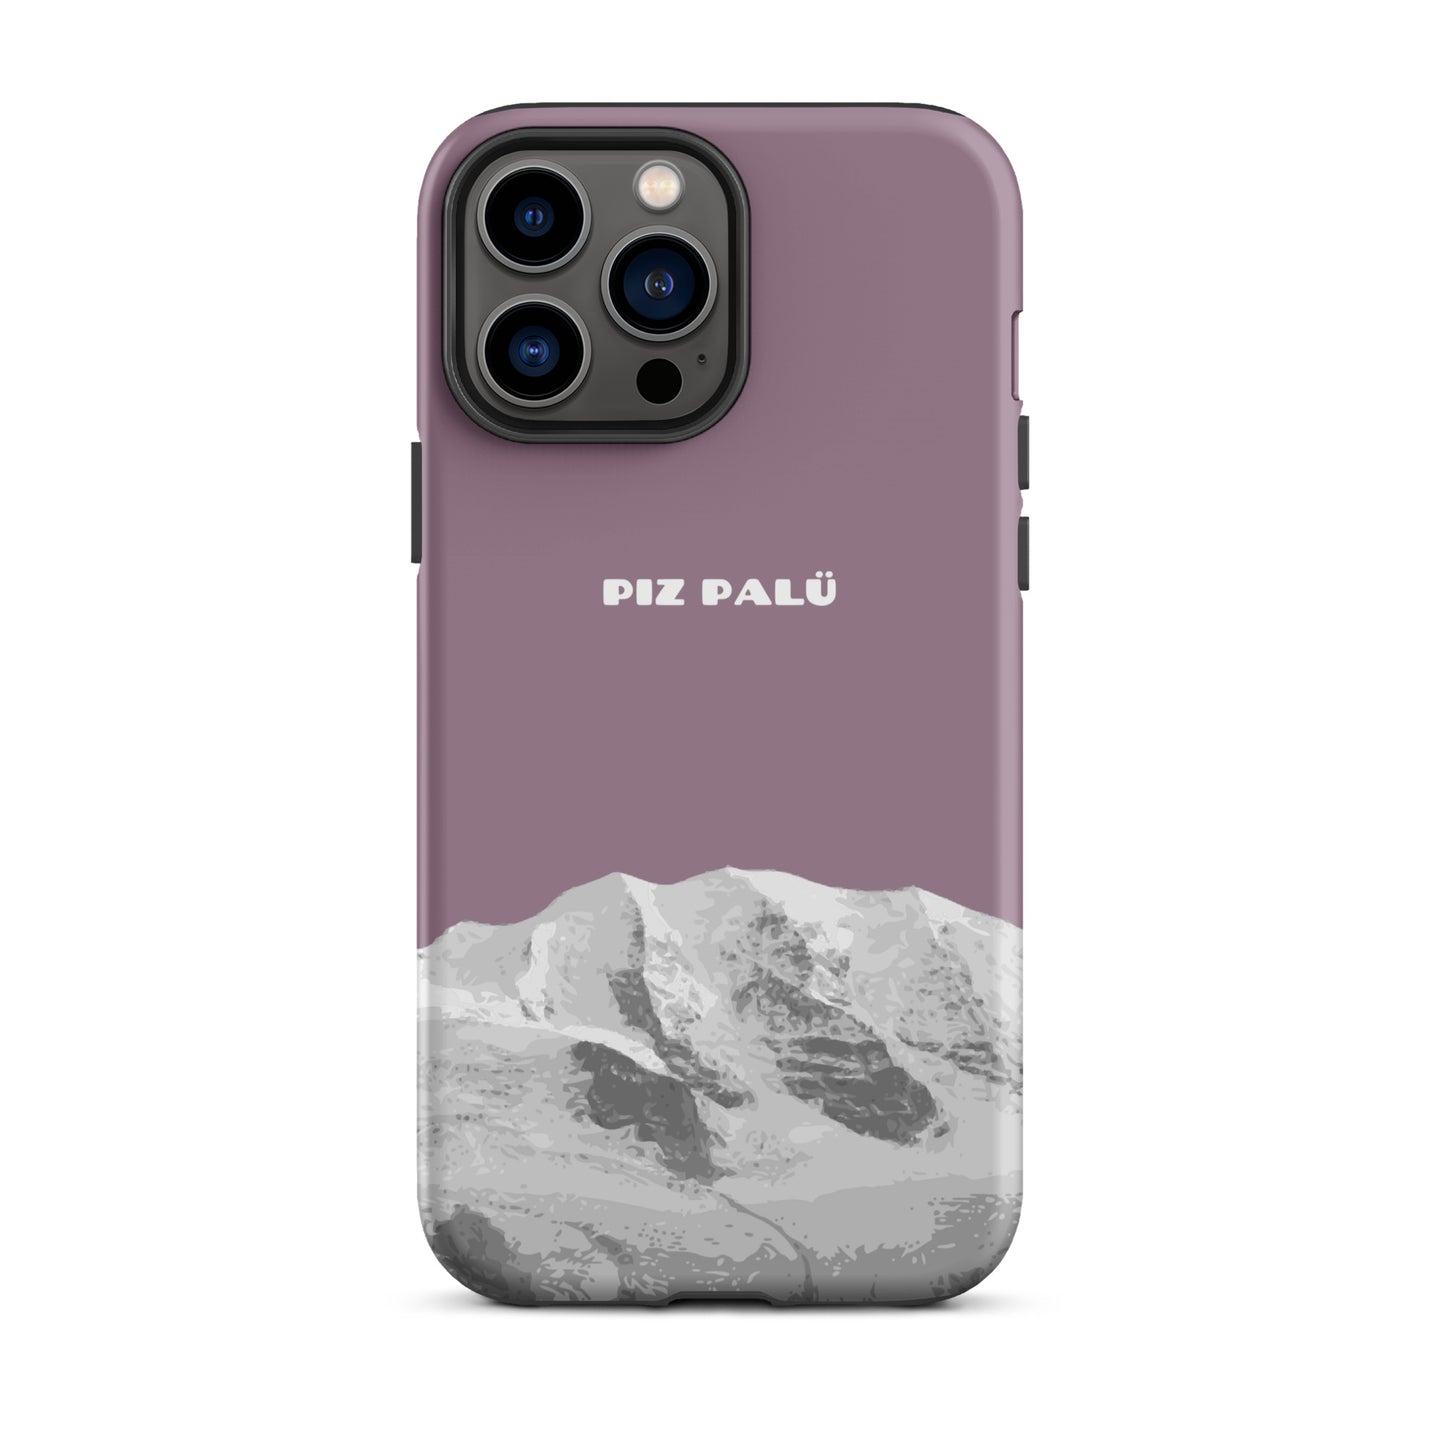 Hülle für das iPhone 13 Pro Max von Apple in der Farbe Pastellviolett, dass den Piz Palü in Graubünden zeigt.